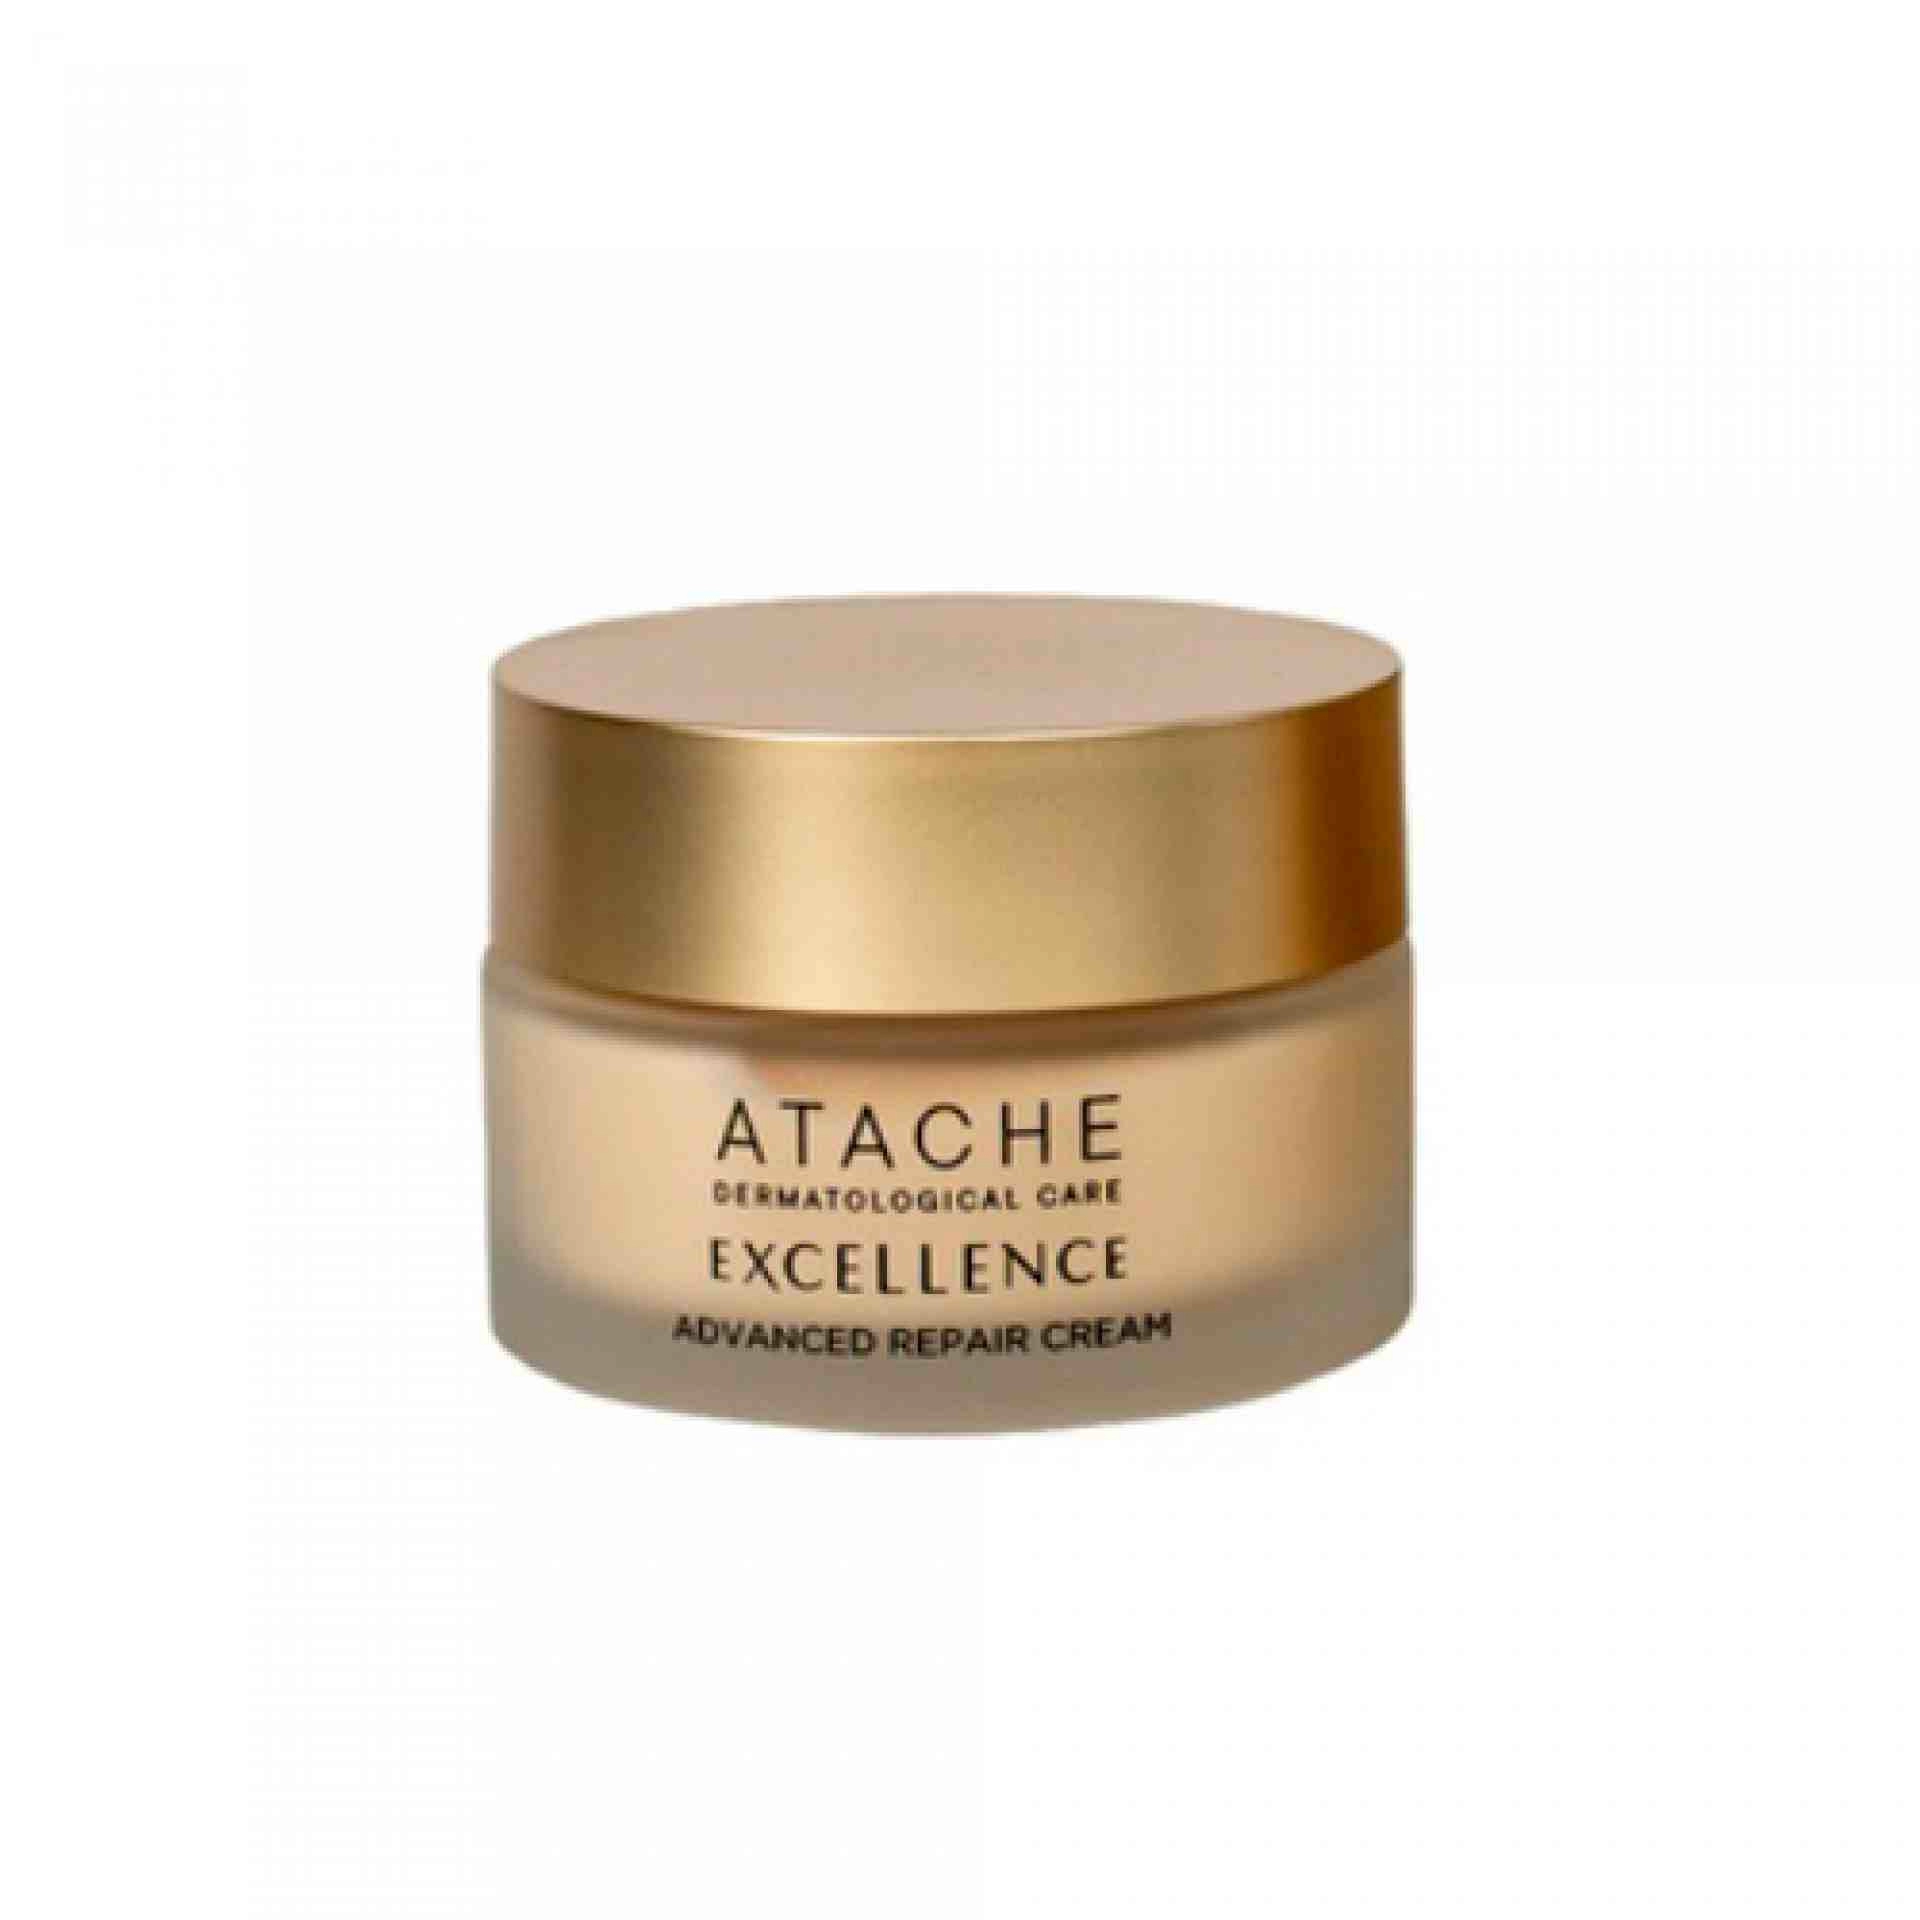 Advanced Repair Cream | Crema facial antiedad 50ml - Excellence - Atache ®